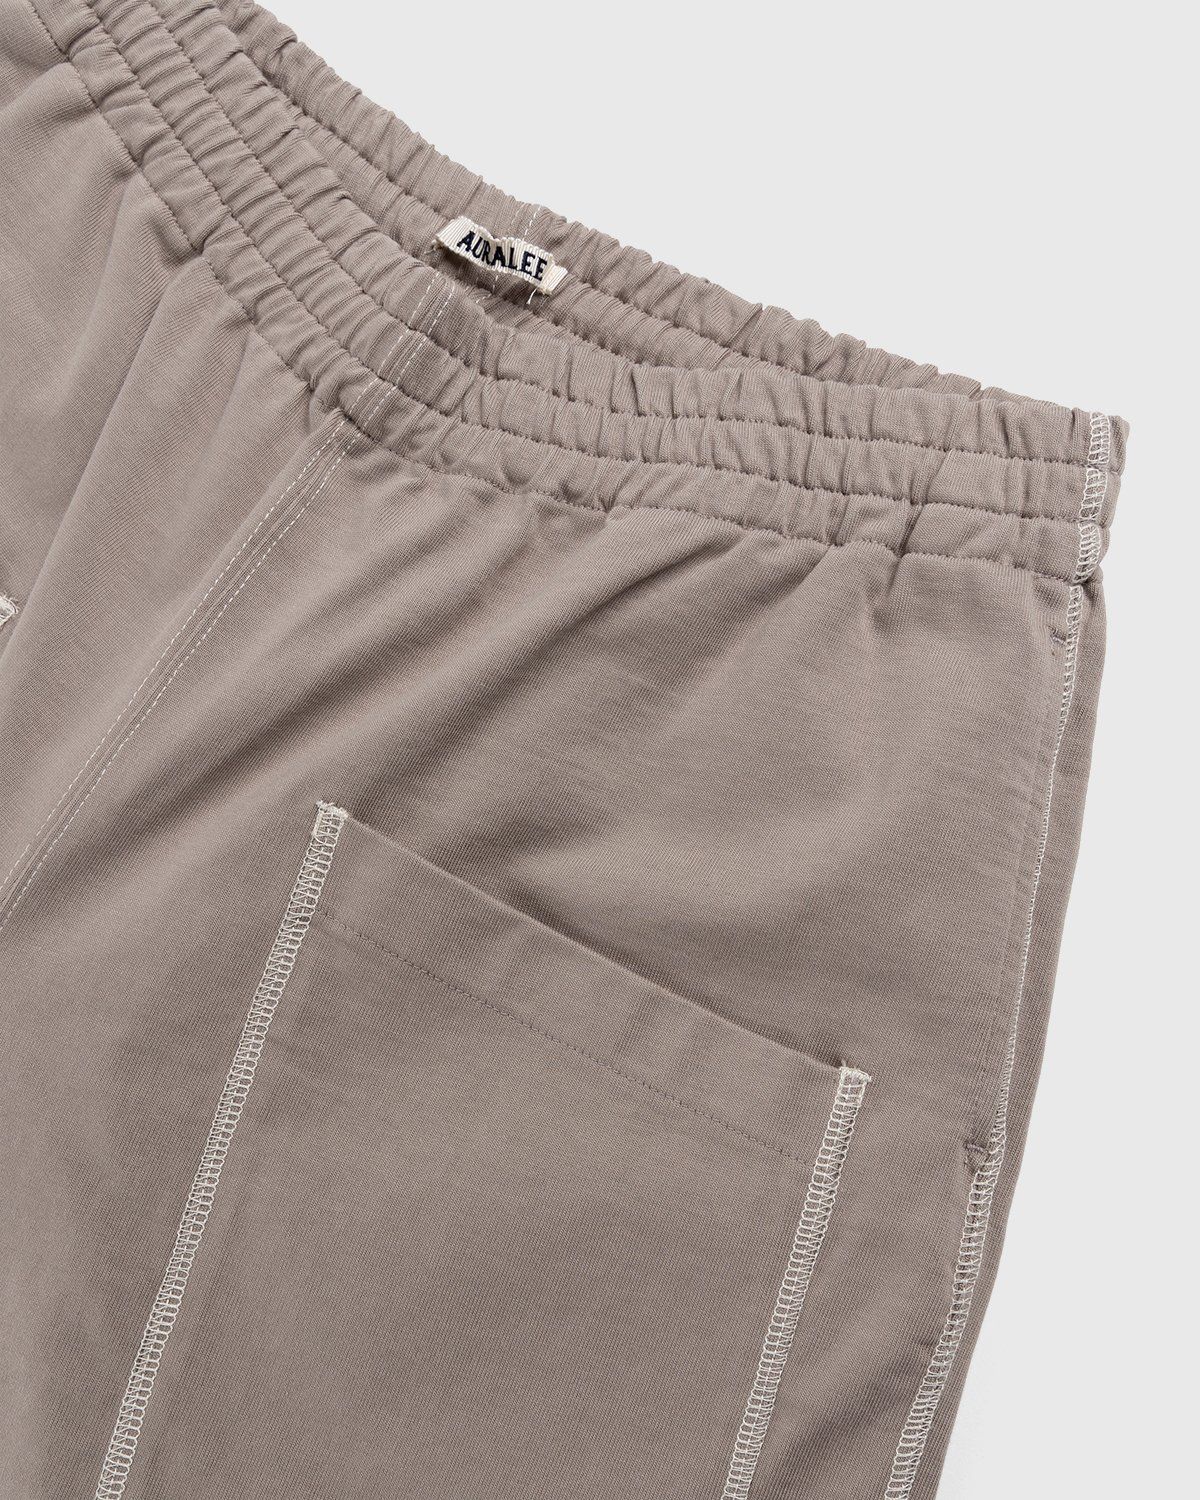 Auralee – High Density Cotton Jersey Shorts Grey Beige